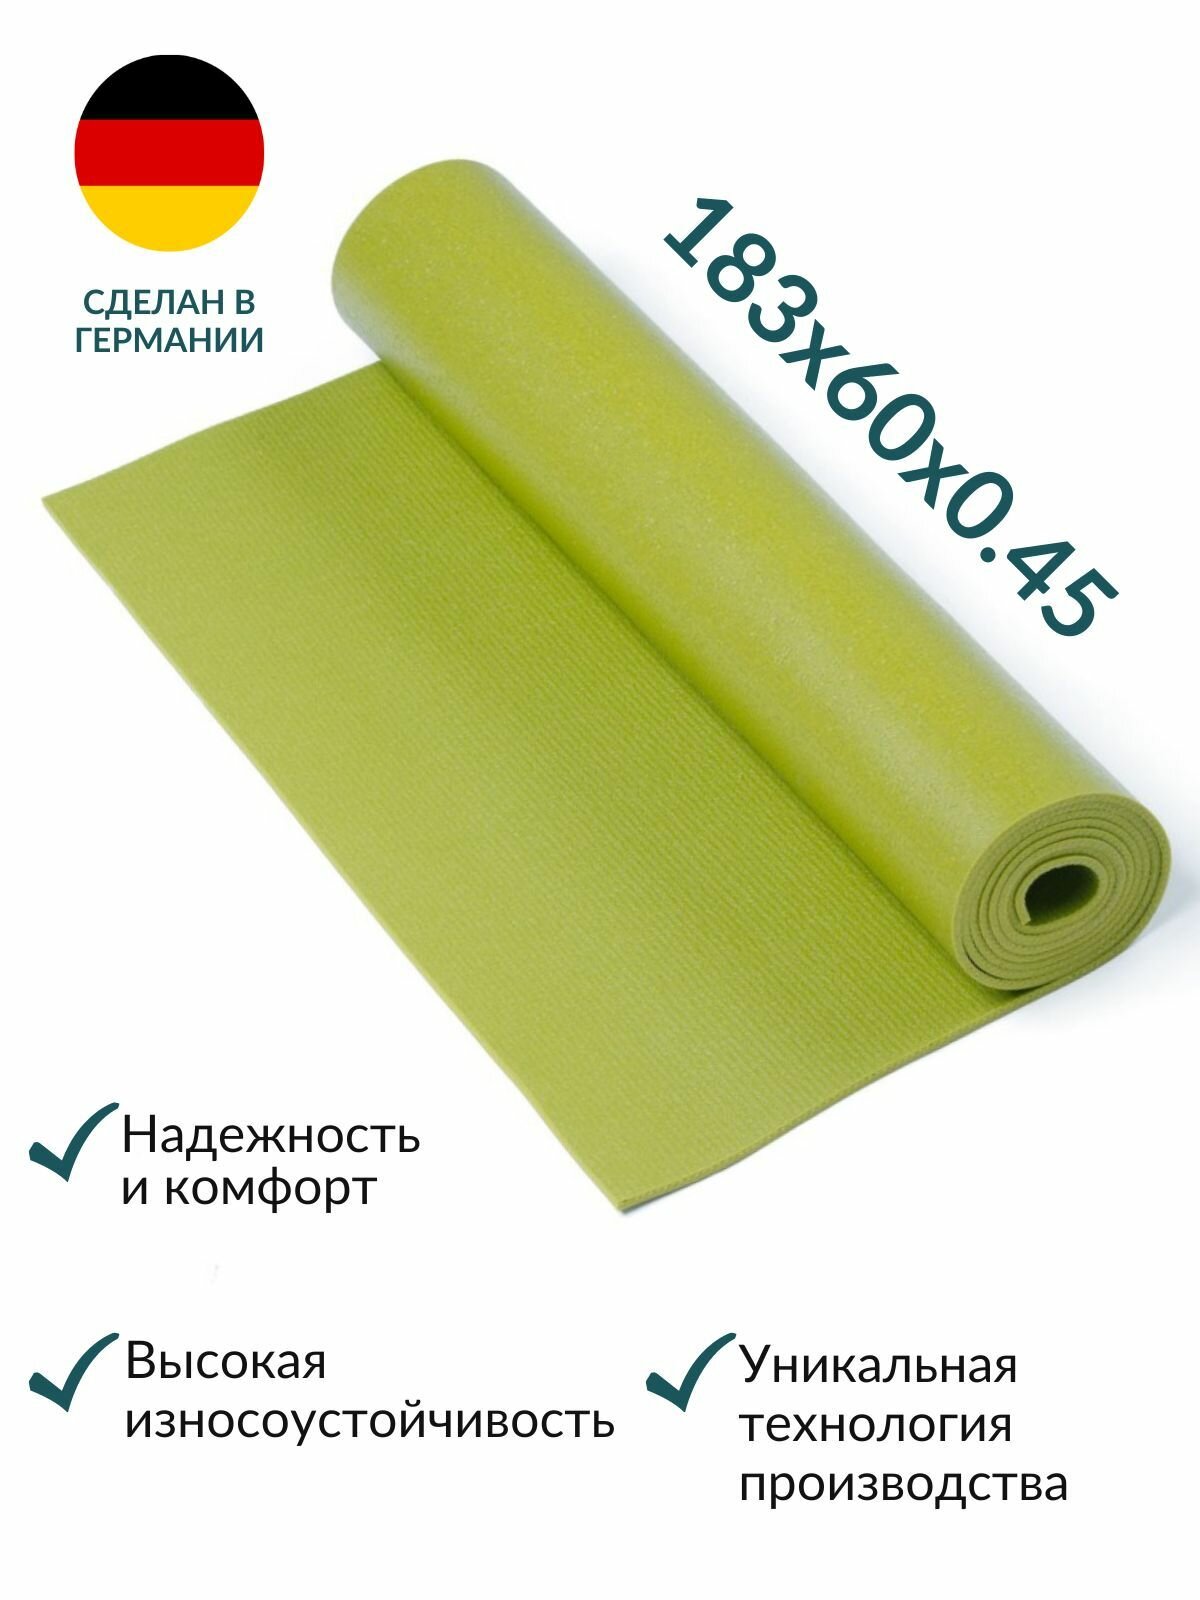 Коврик для йоги Yogastuff Ришикеш зеленый 183*60 см, прочный, нескользящий